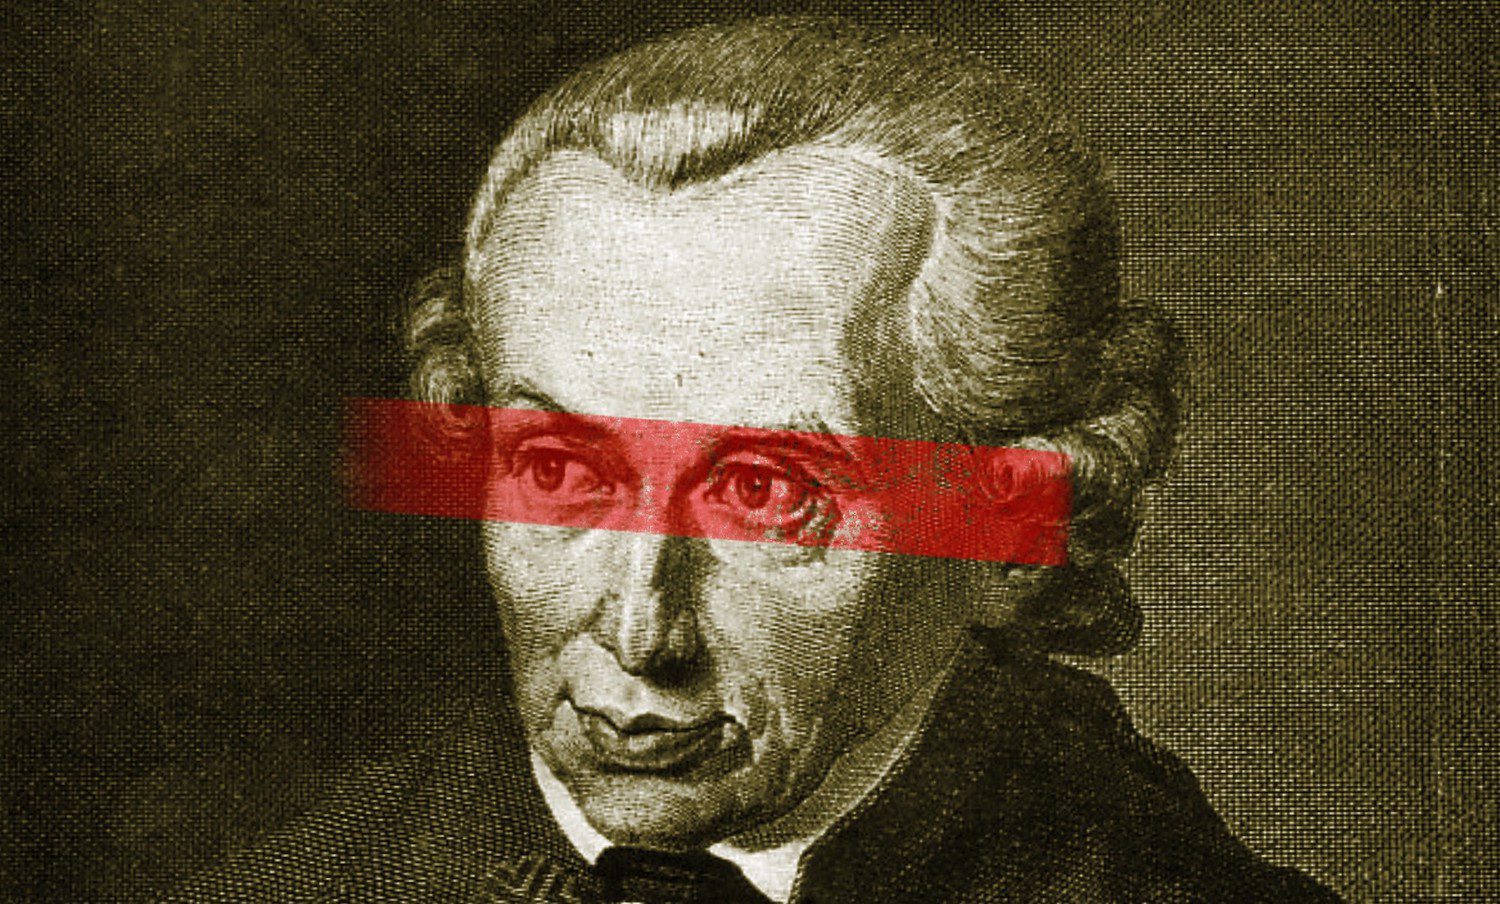 La Ilustración a través de los ojos de Kant - Ethic : Ethic